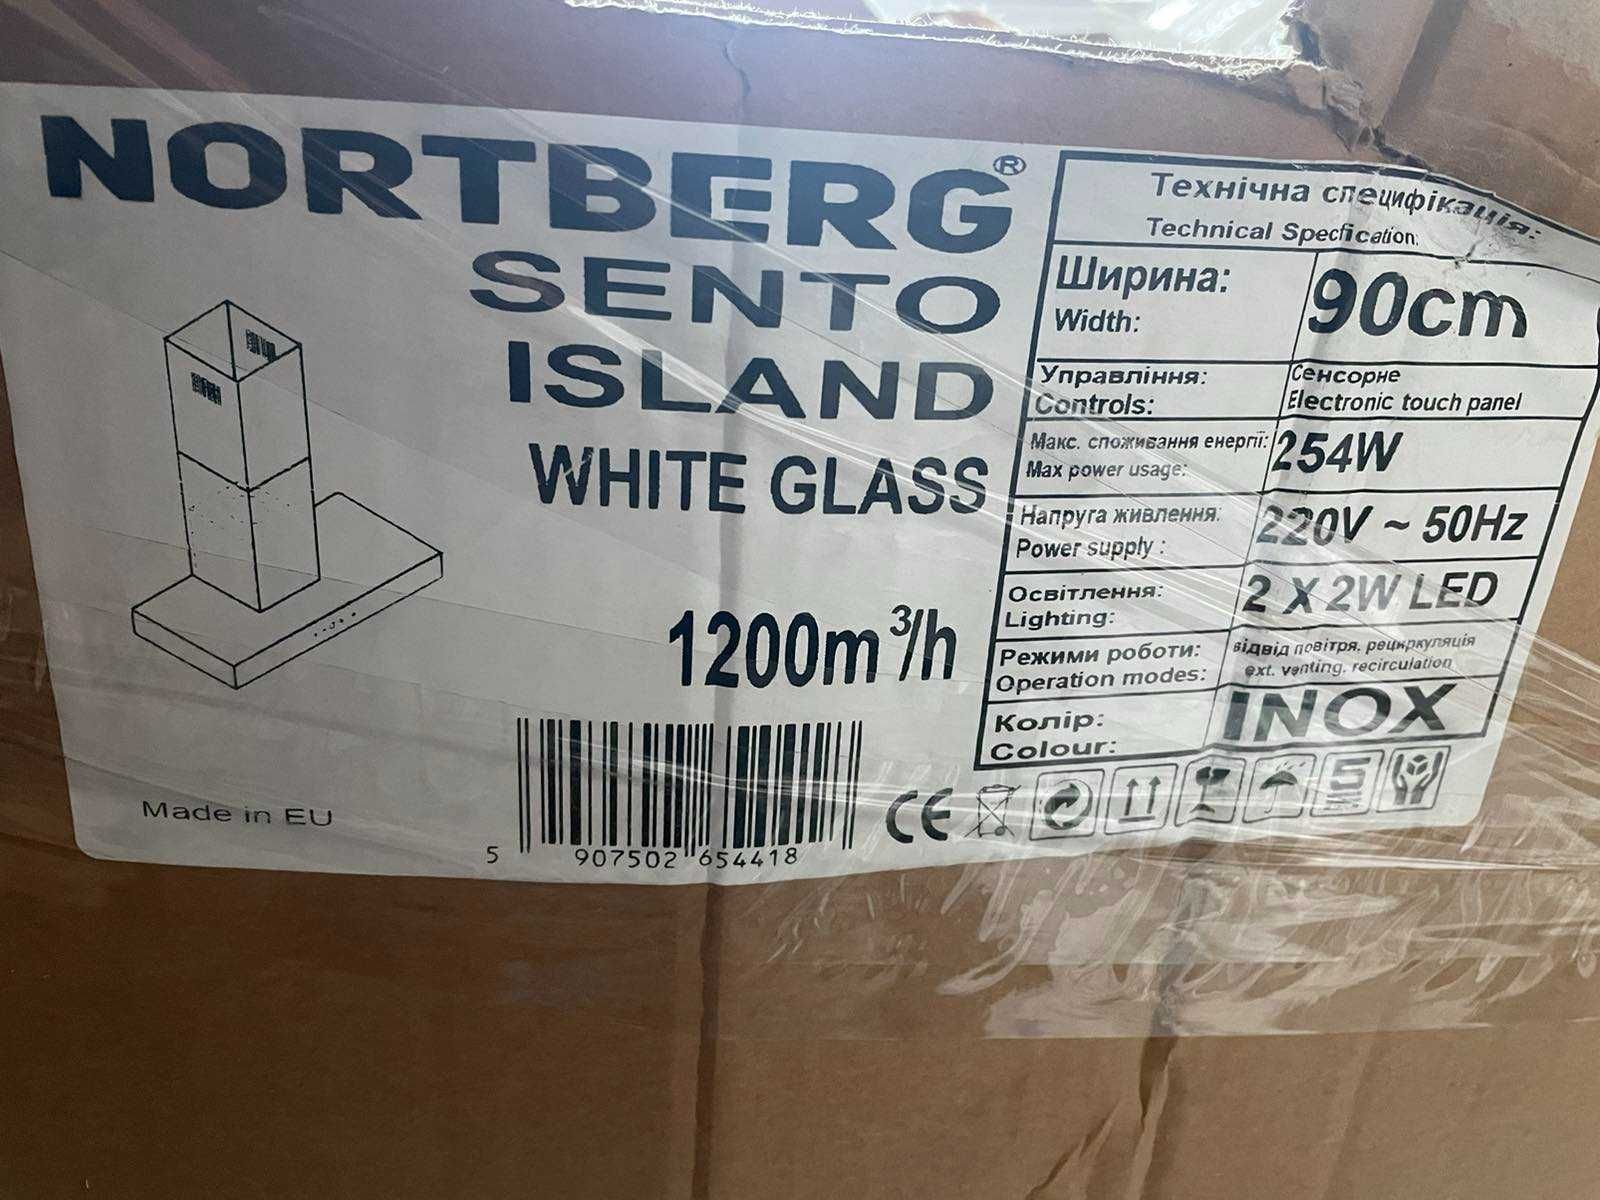 Витяжка Nortberg Sento Island White Glass 1200m3